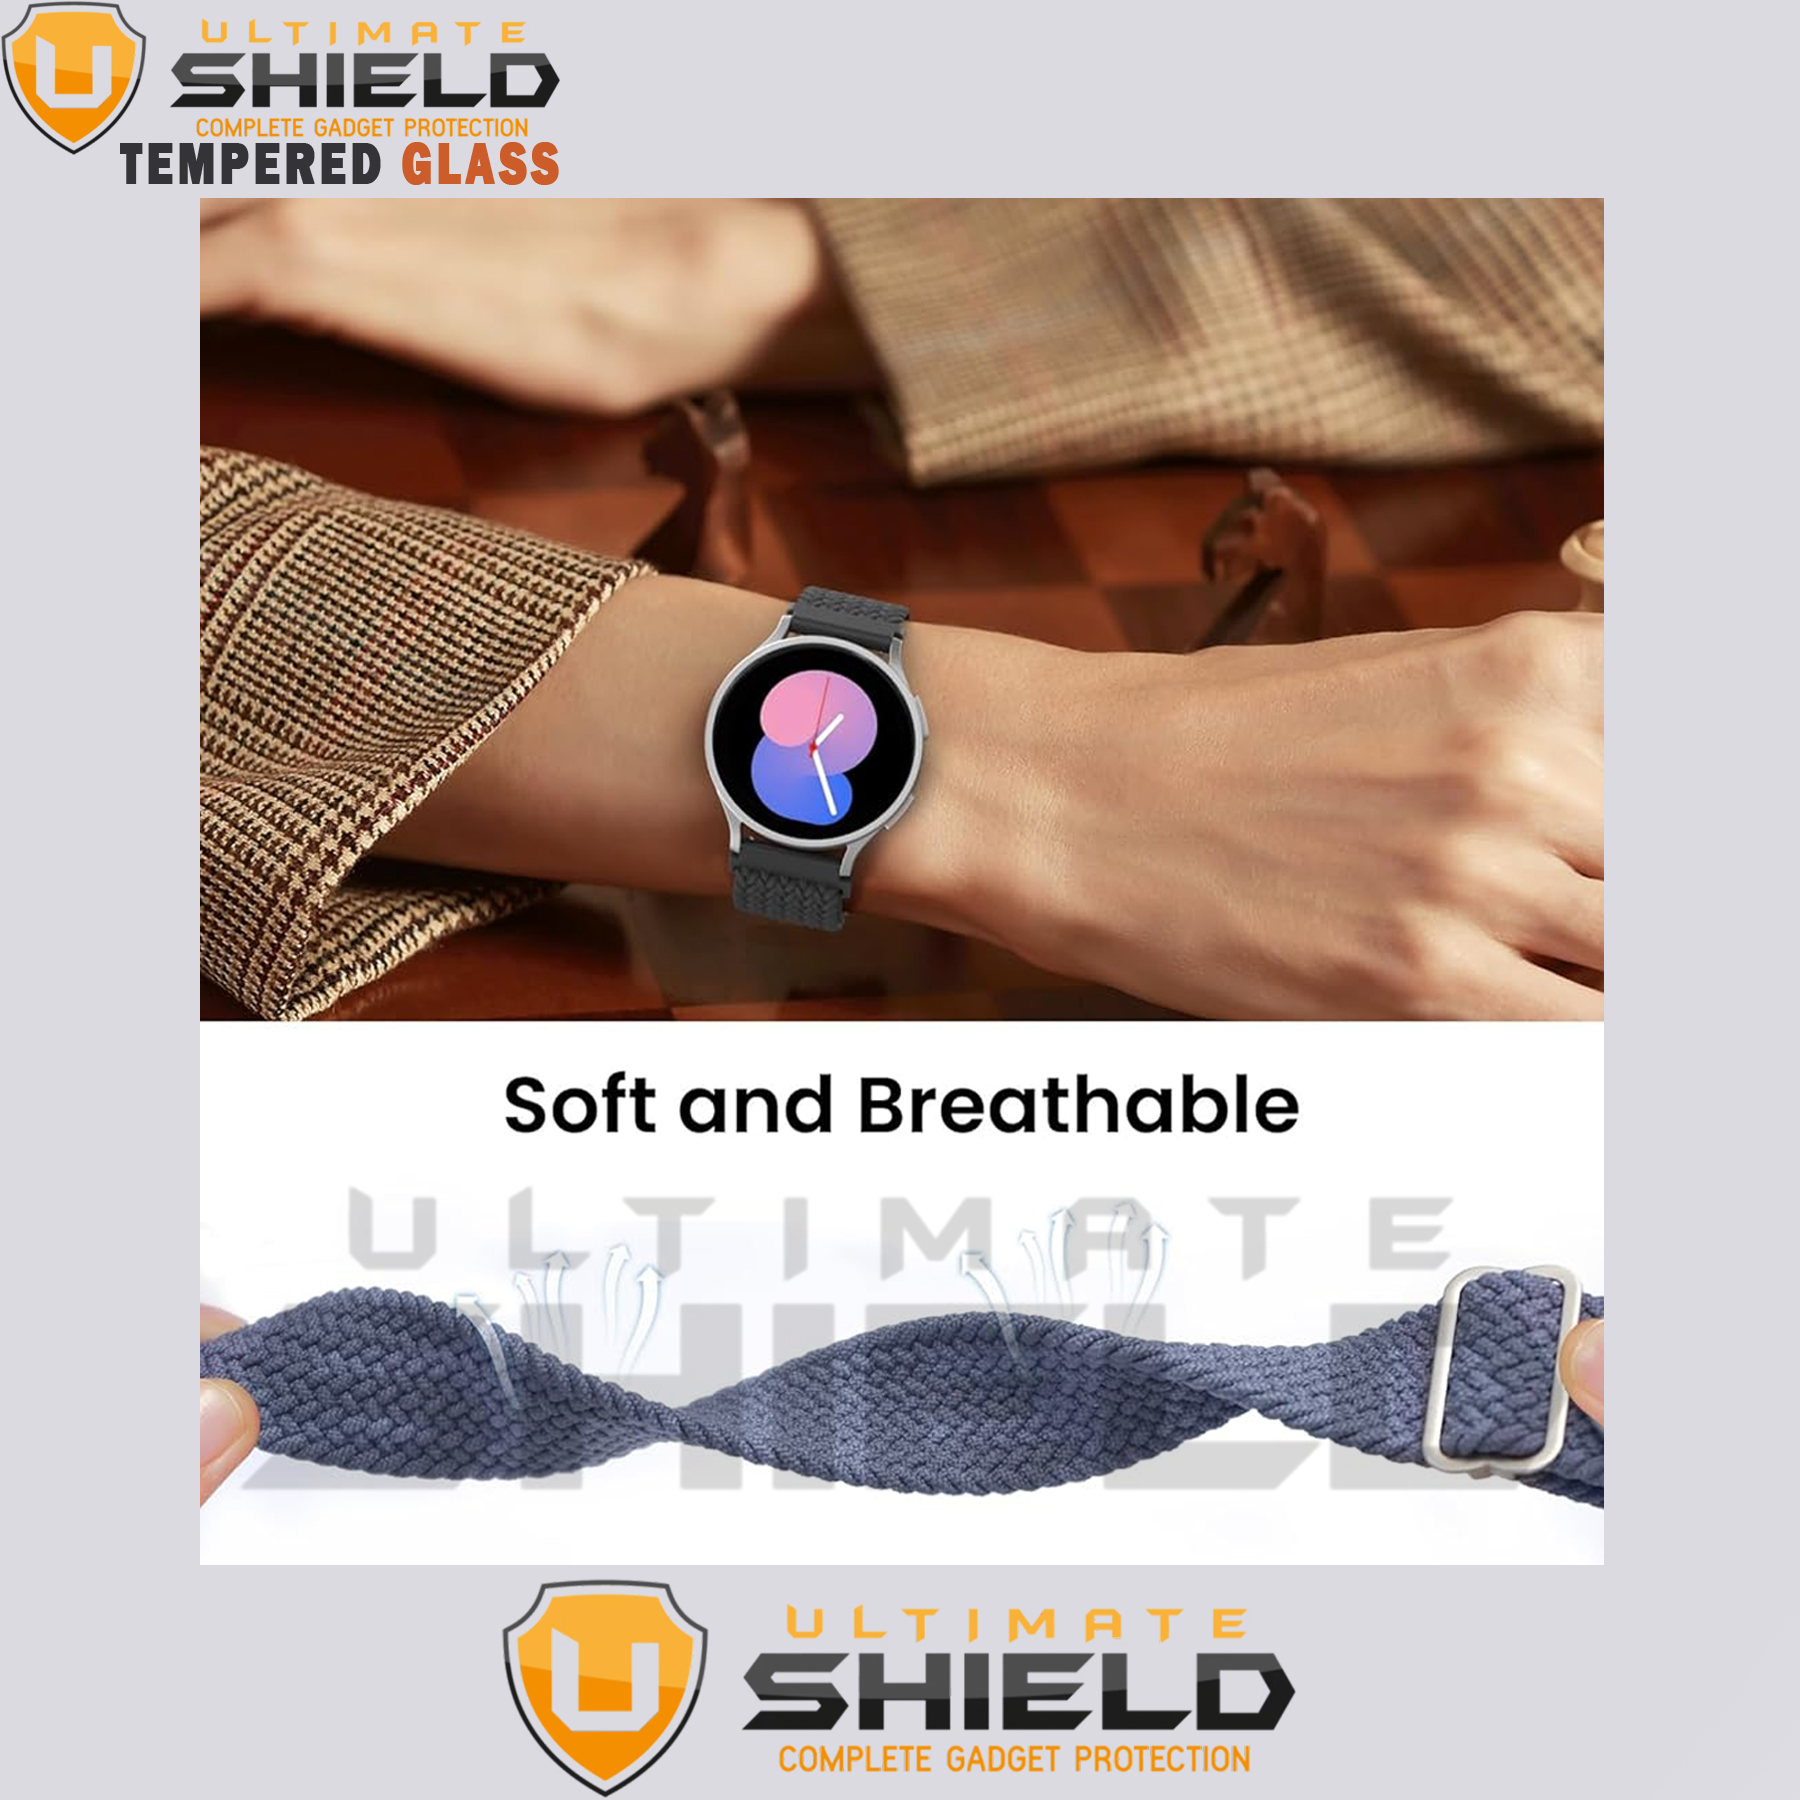 بند آلتیمیت شیلد مدل Braided UL TW مناسب برای ساعت هوشمند میبرو Lite 2 / X1 / A1 / A2